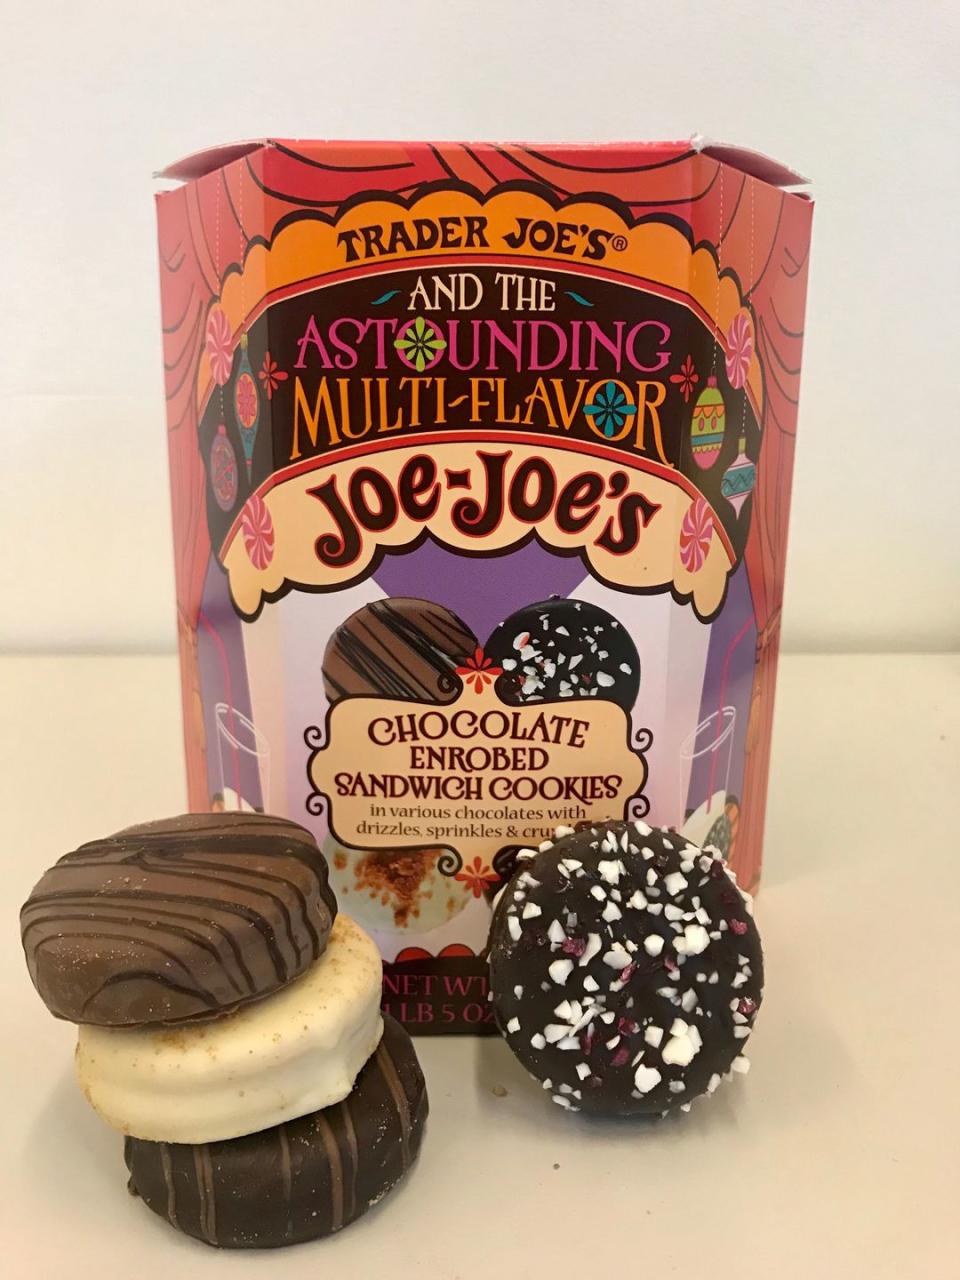 2) Chocolate Enrobed Joe-Joe's